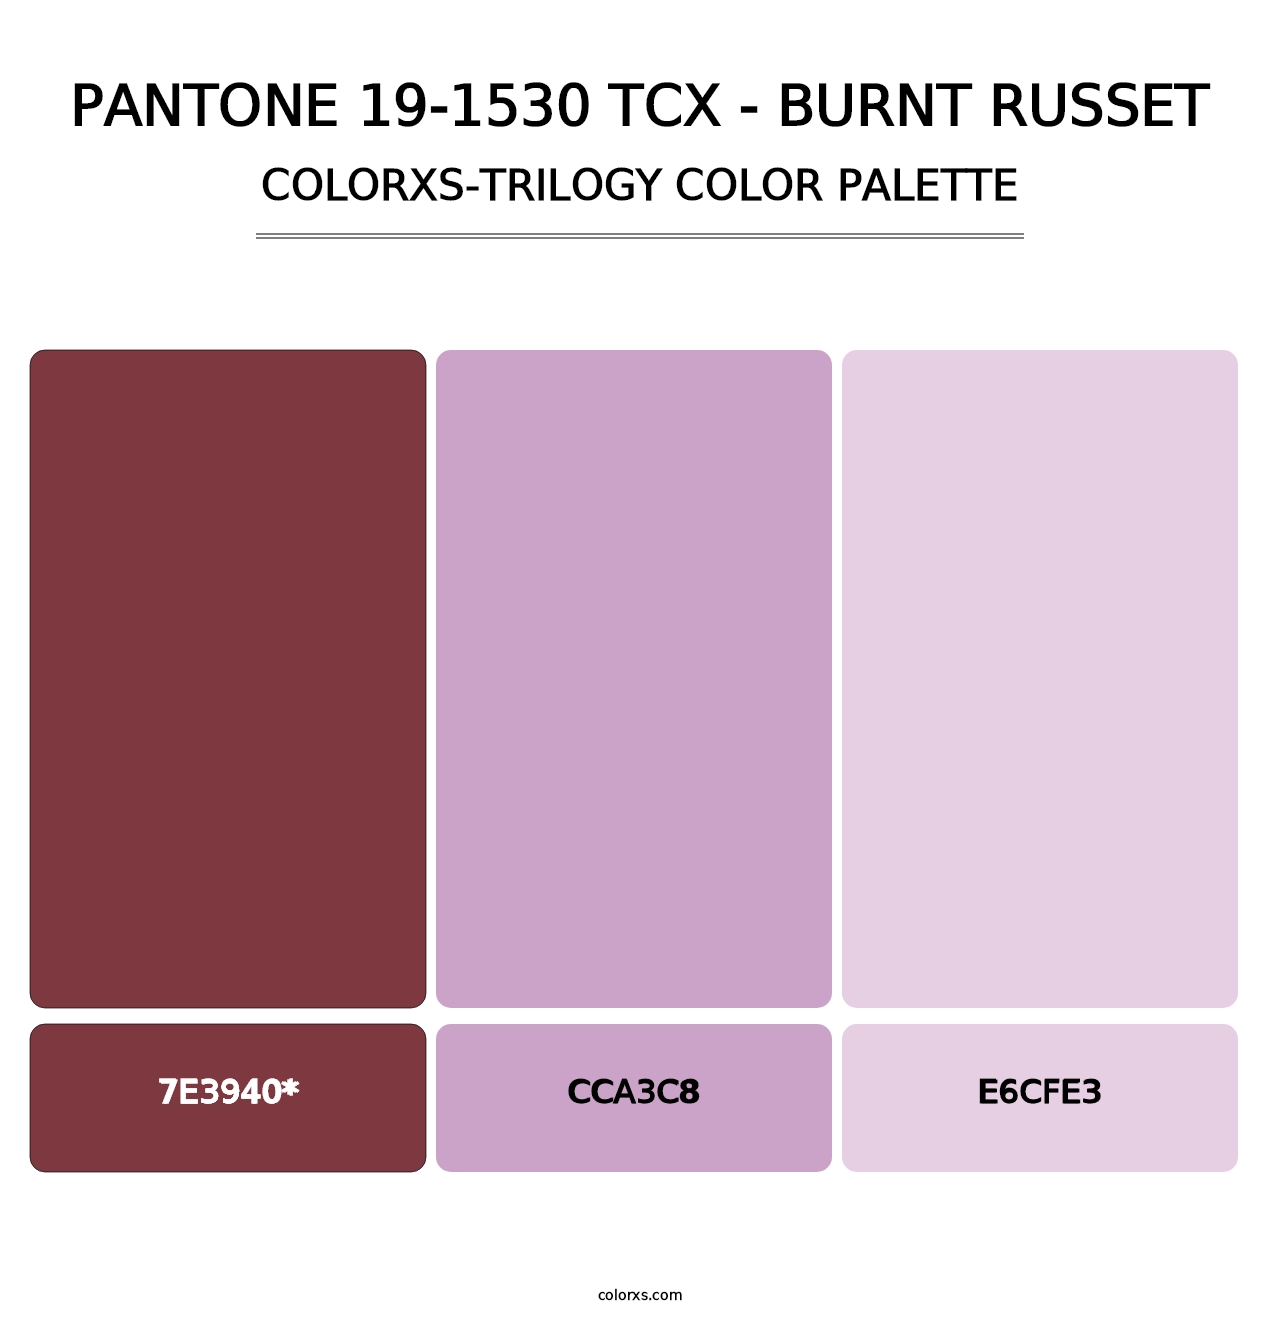 PANTONE 19-1530 TCX - Burnt Russet - Colorxs Trilogy Palette